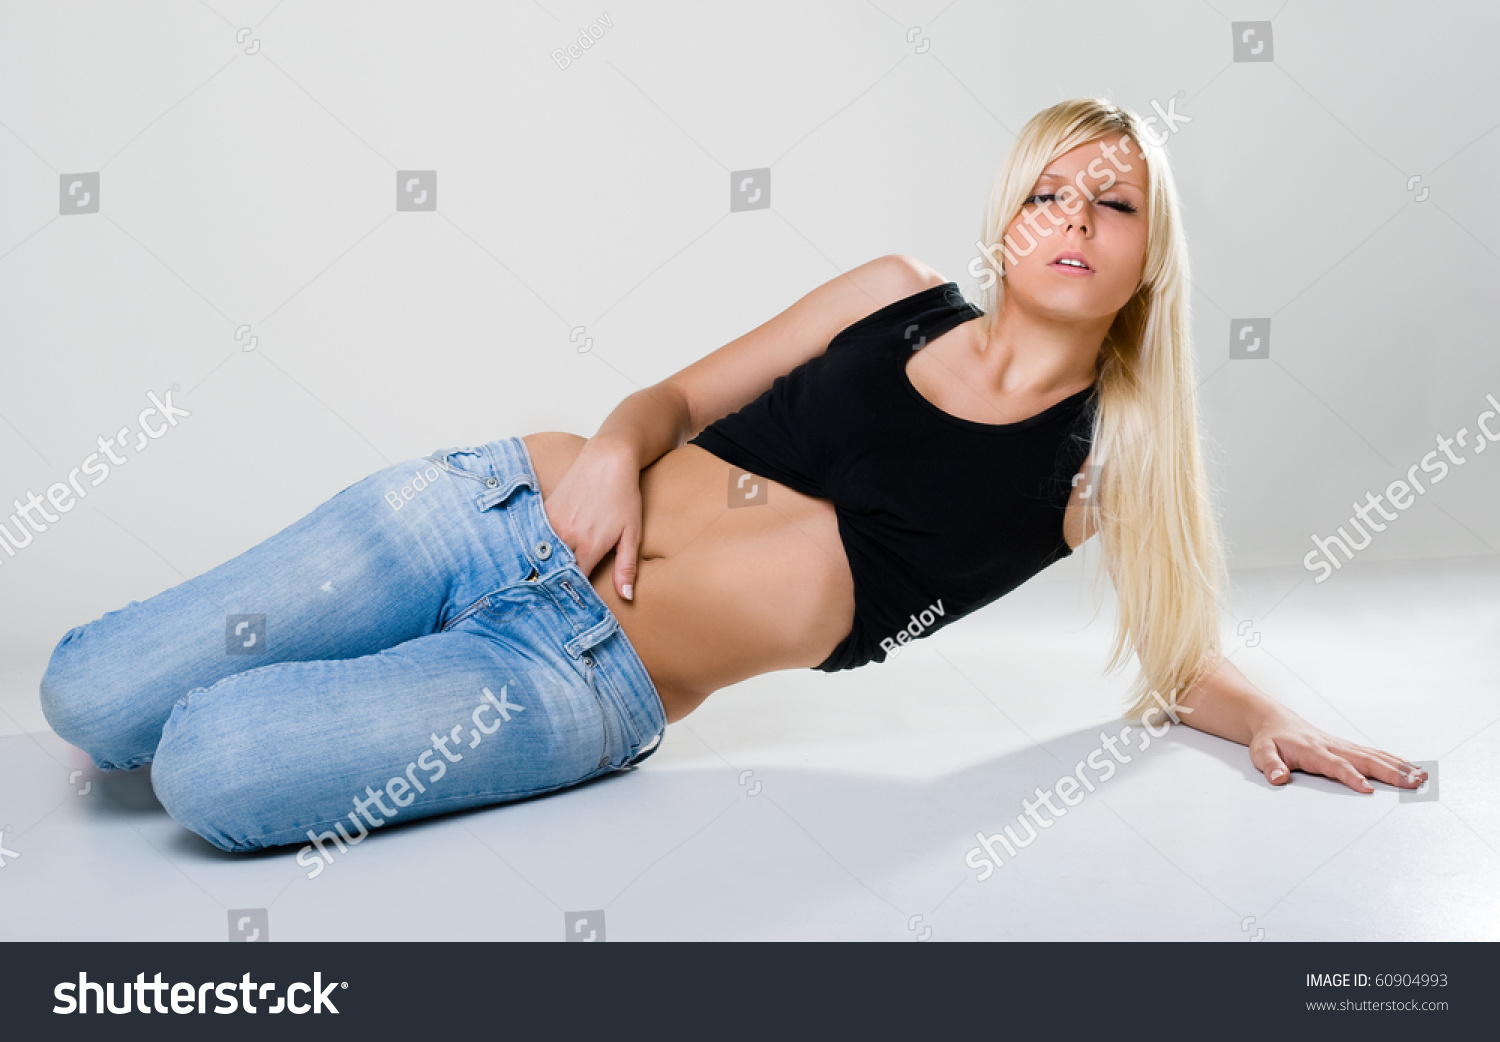 sexy woman touching herself